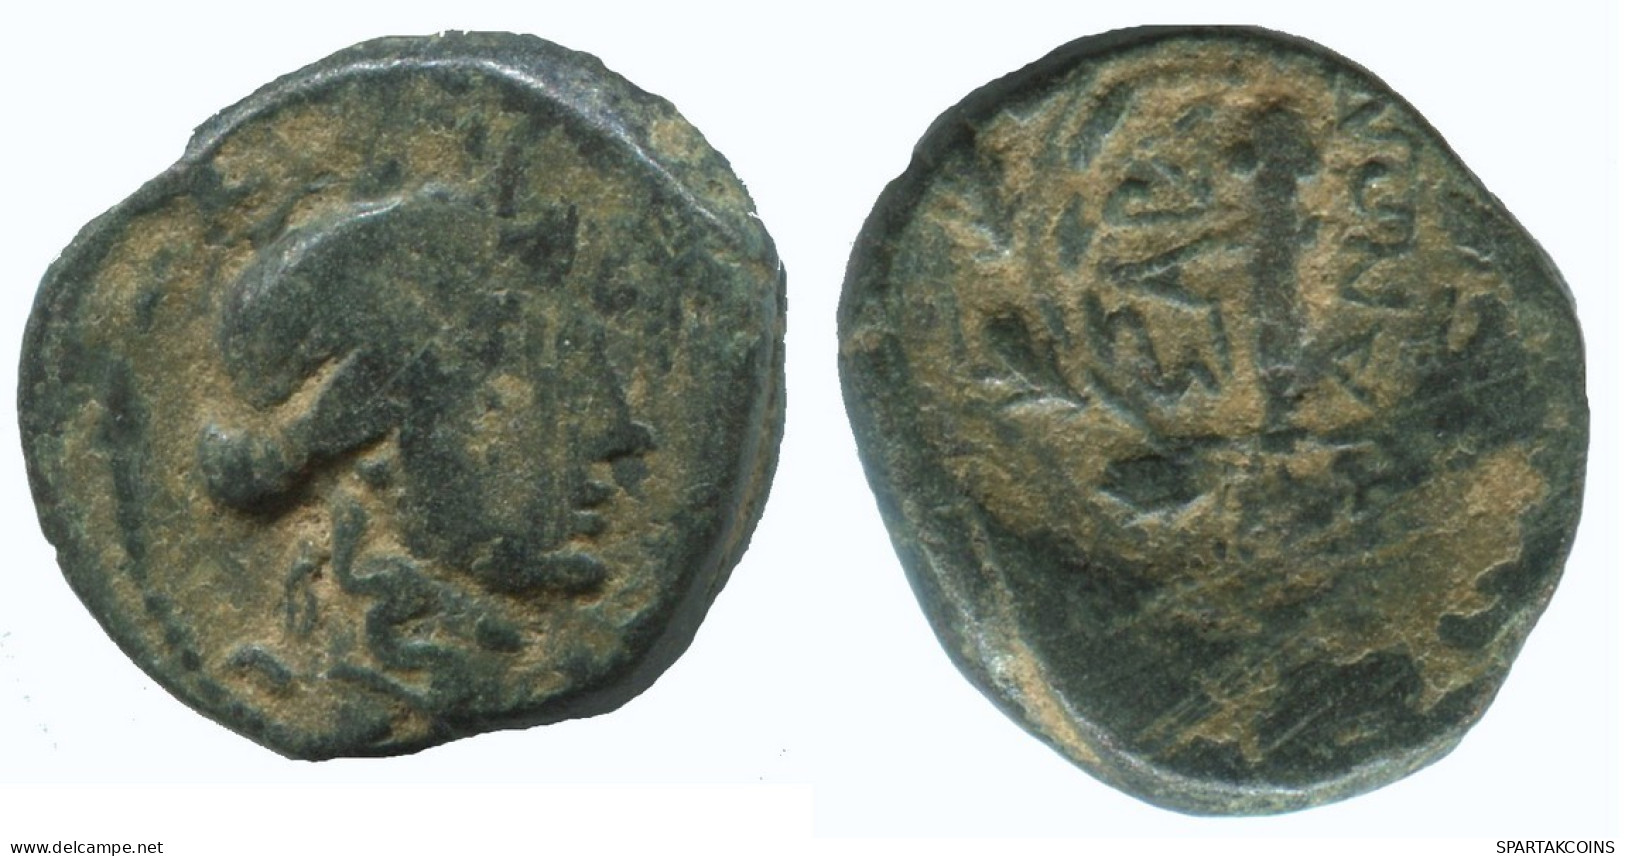 WREATH Authentic Original Ancient GREEK Coin 3.7g/17mm #NNN1425.9.U.A - Grecques